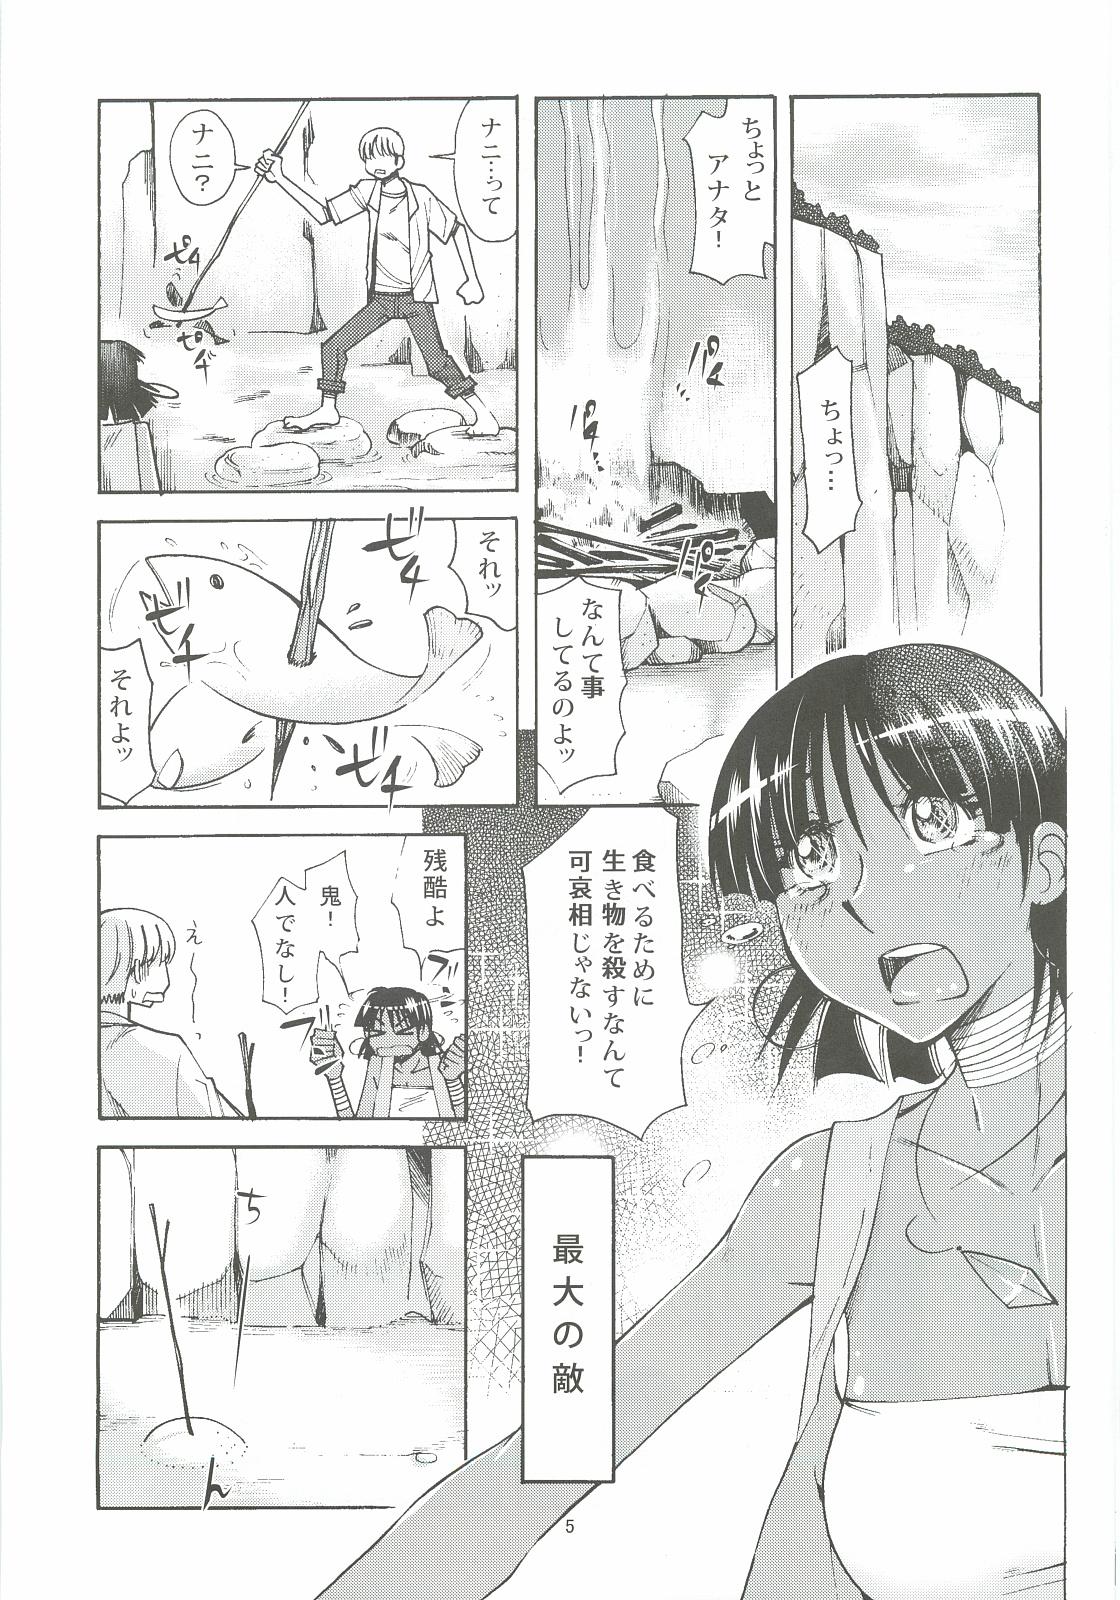 18 Year Old Porn Nadia to Mujintou Seikatsu - Fushigi no umi no nadia Anal Fuck - Page 4